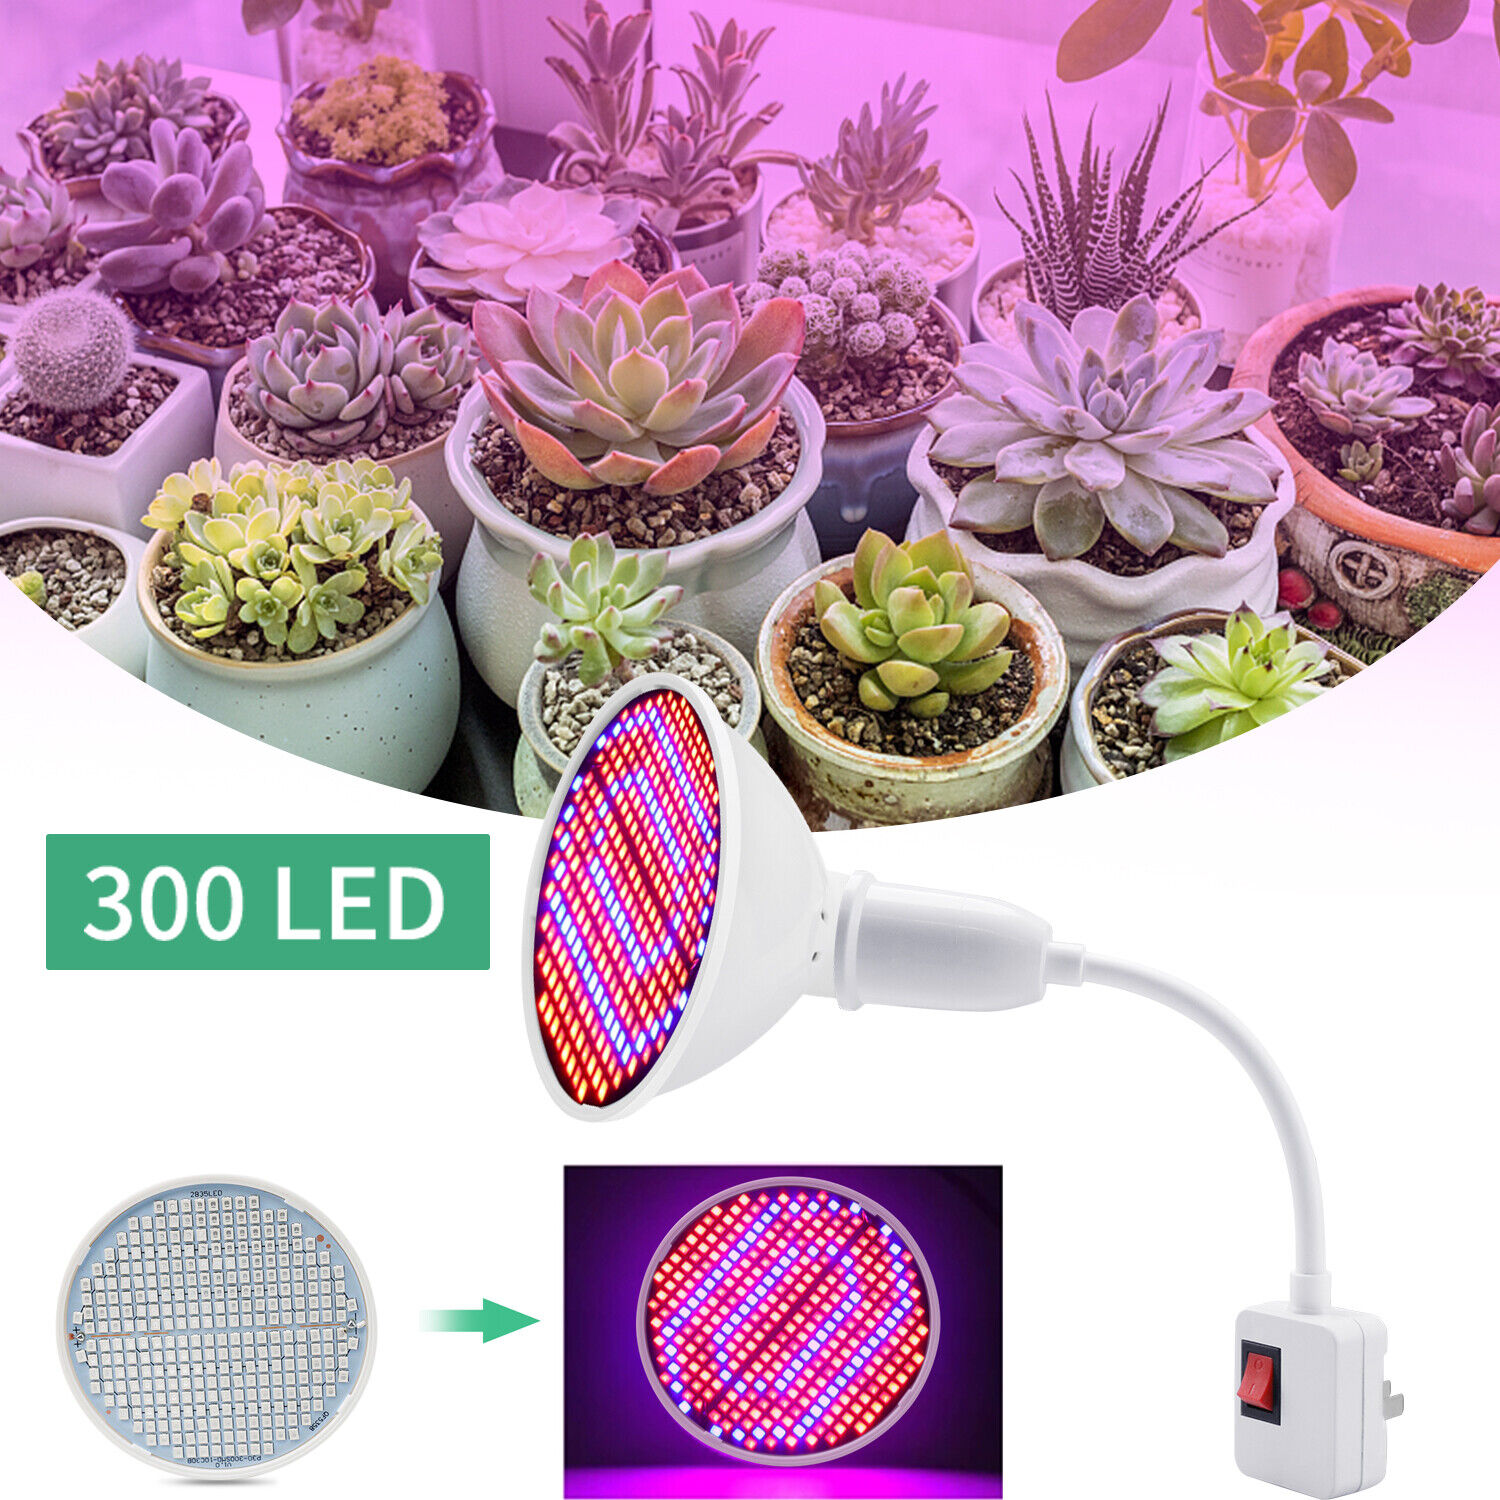 LED Grow Light Bulb Full Spectrum Light for Indoor Plants Flowers Veg Growing US